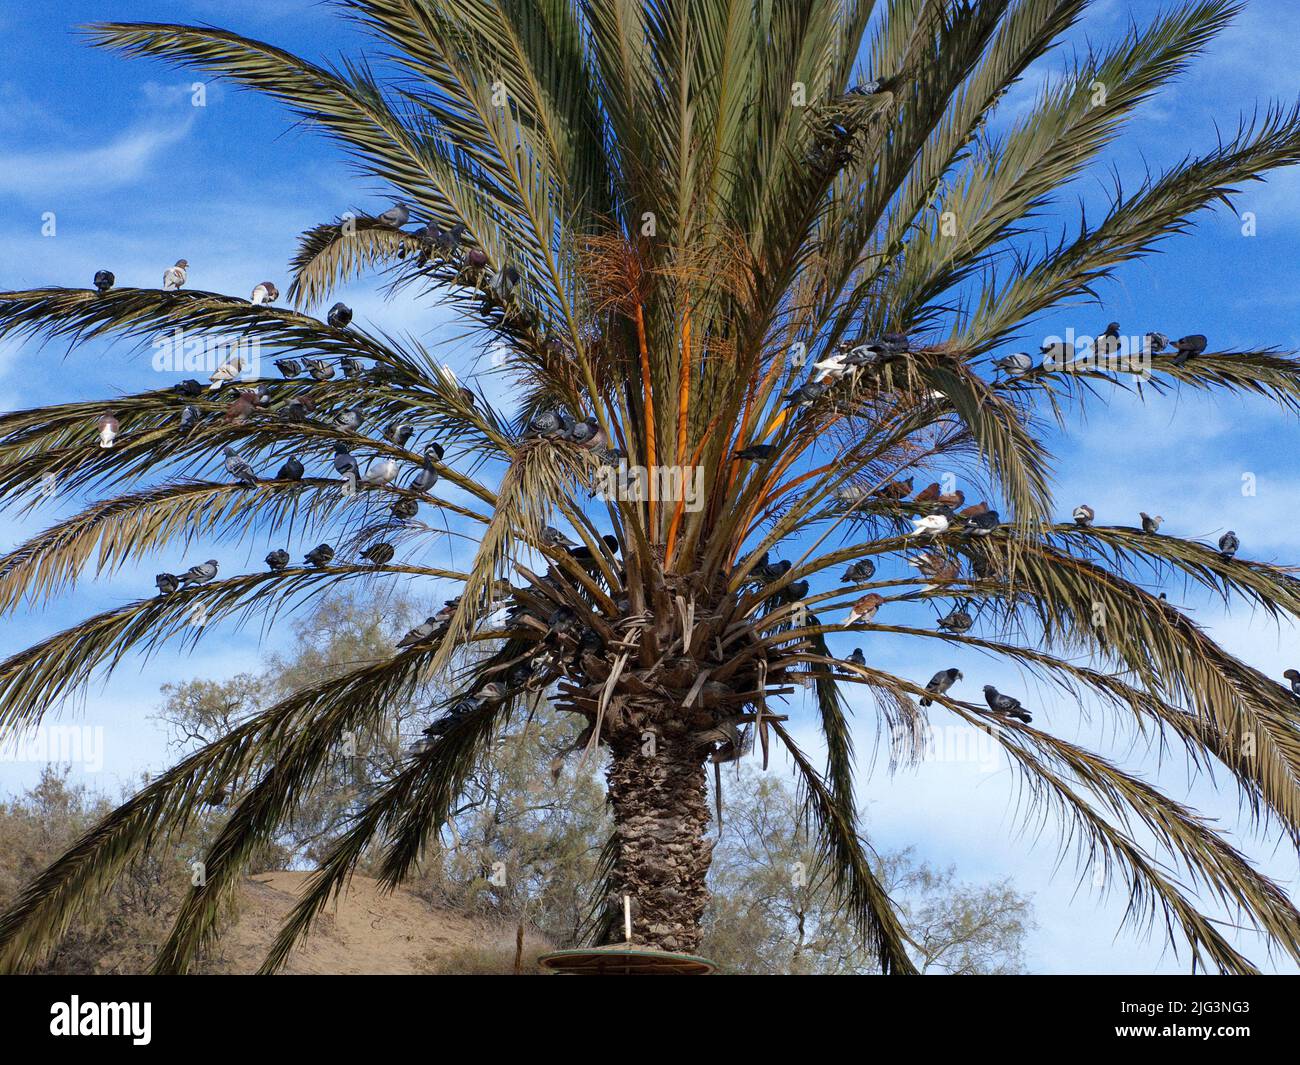 Les pigeons assis sur un palmier à la station Camel près des dunes de Maspalomas, Grand Canary, îles Canaries, Espagne, Europe Banque D'Images